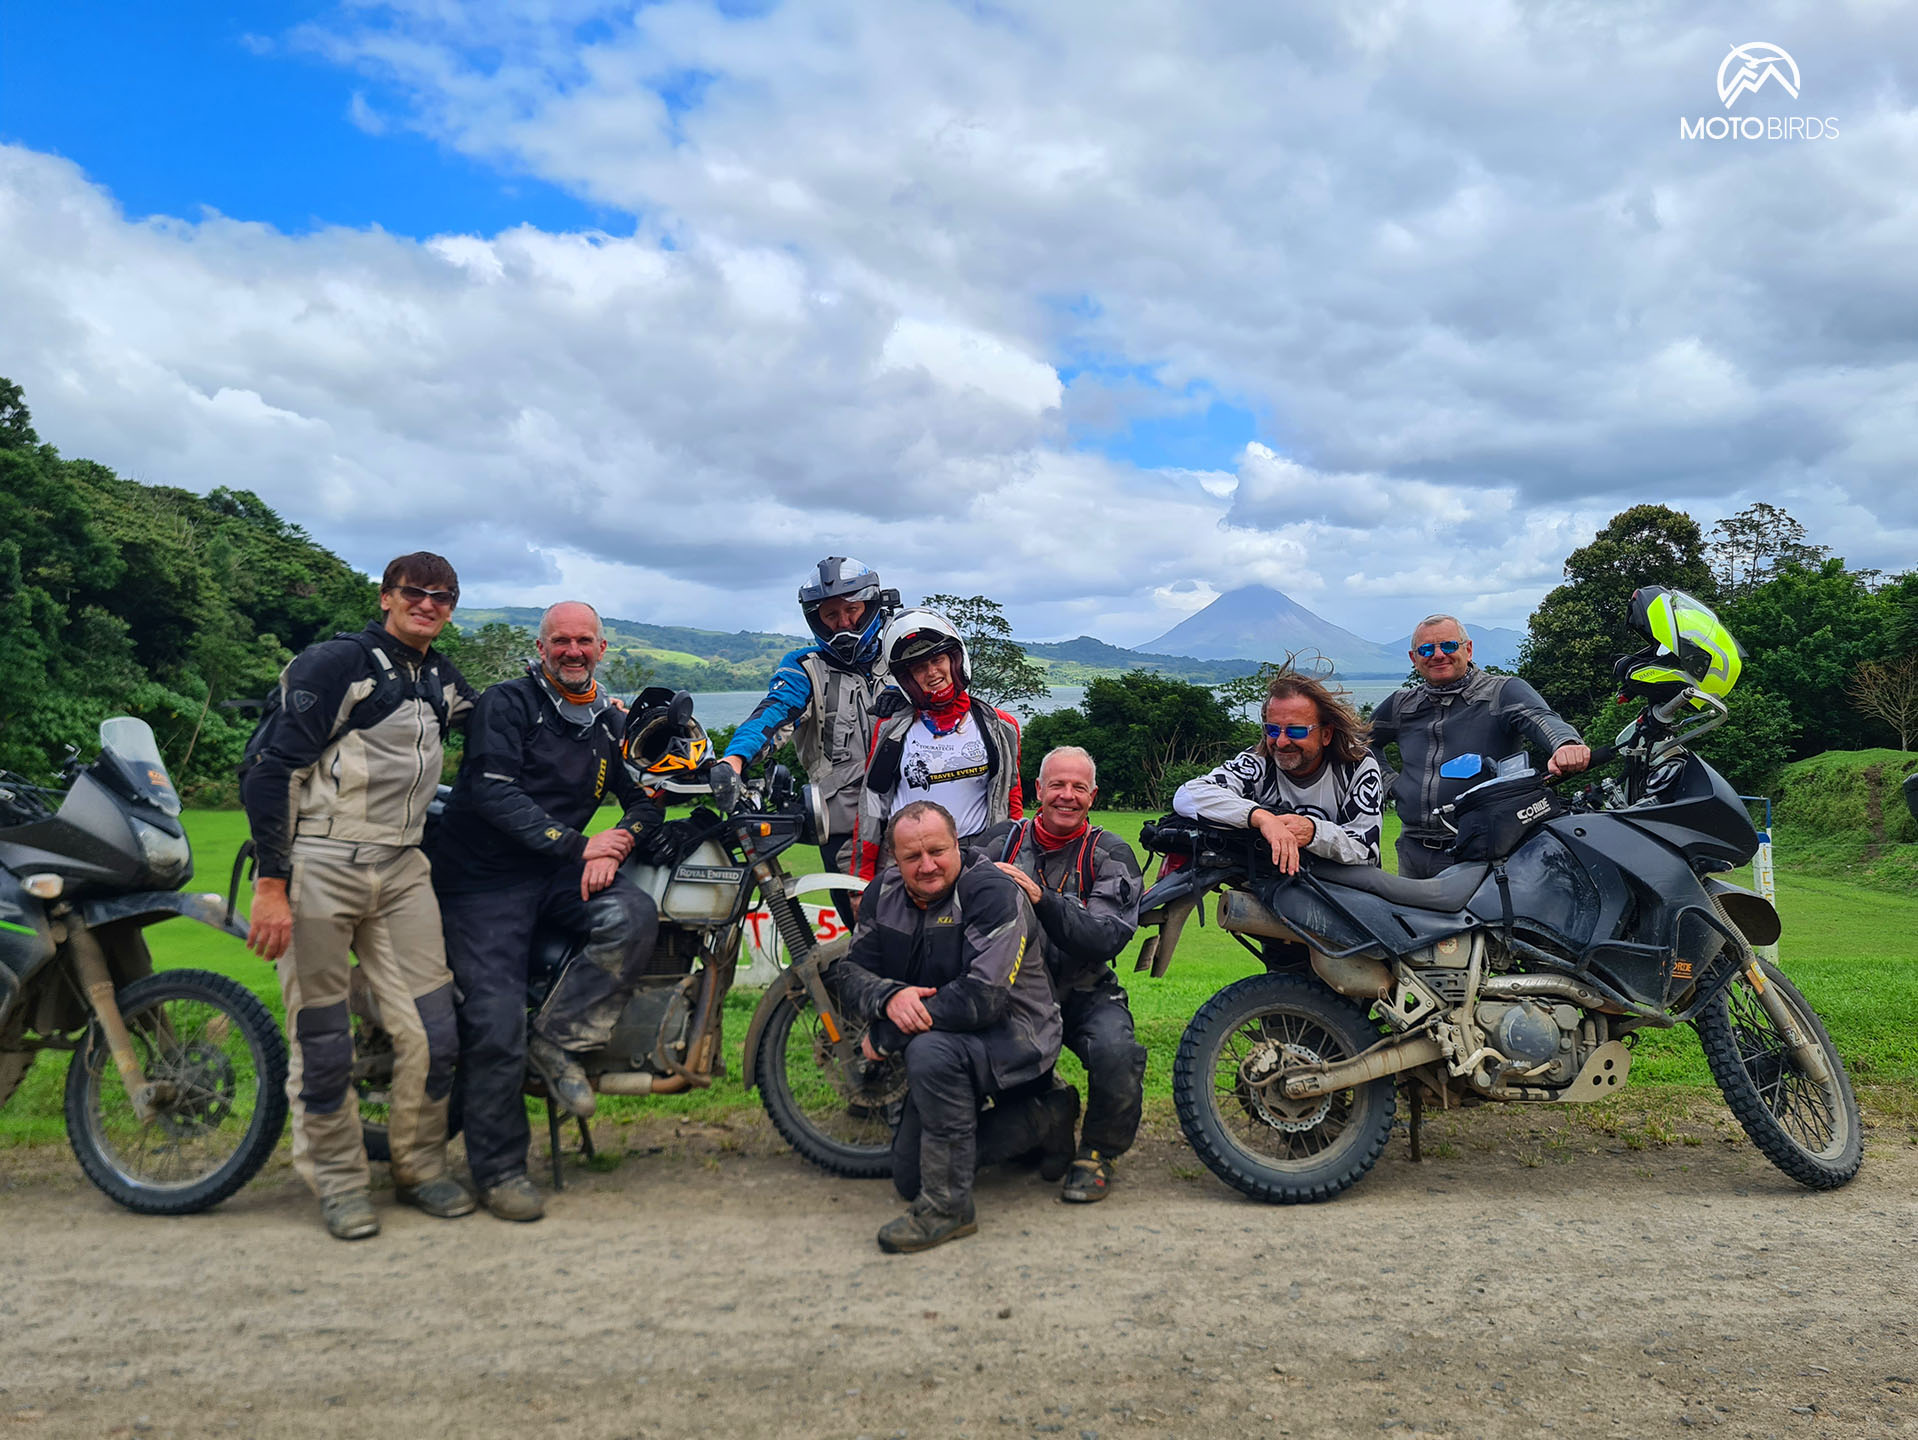 Motocyklowa wyprawa do Kostaryki zorganizowana przez MotoBirds